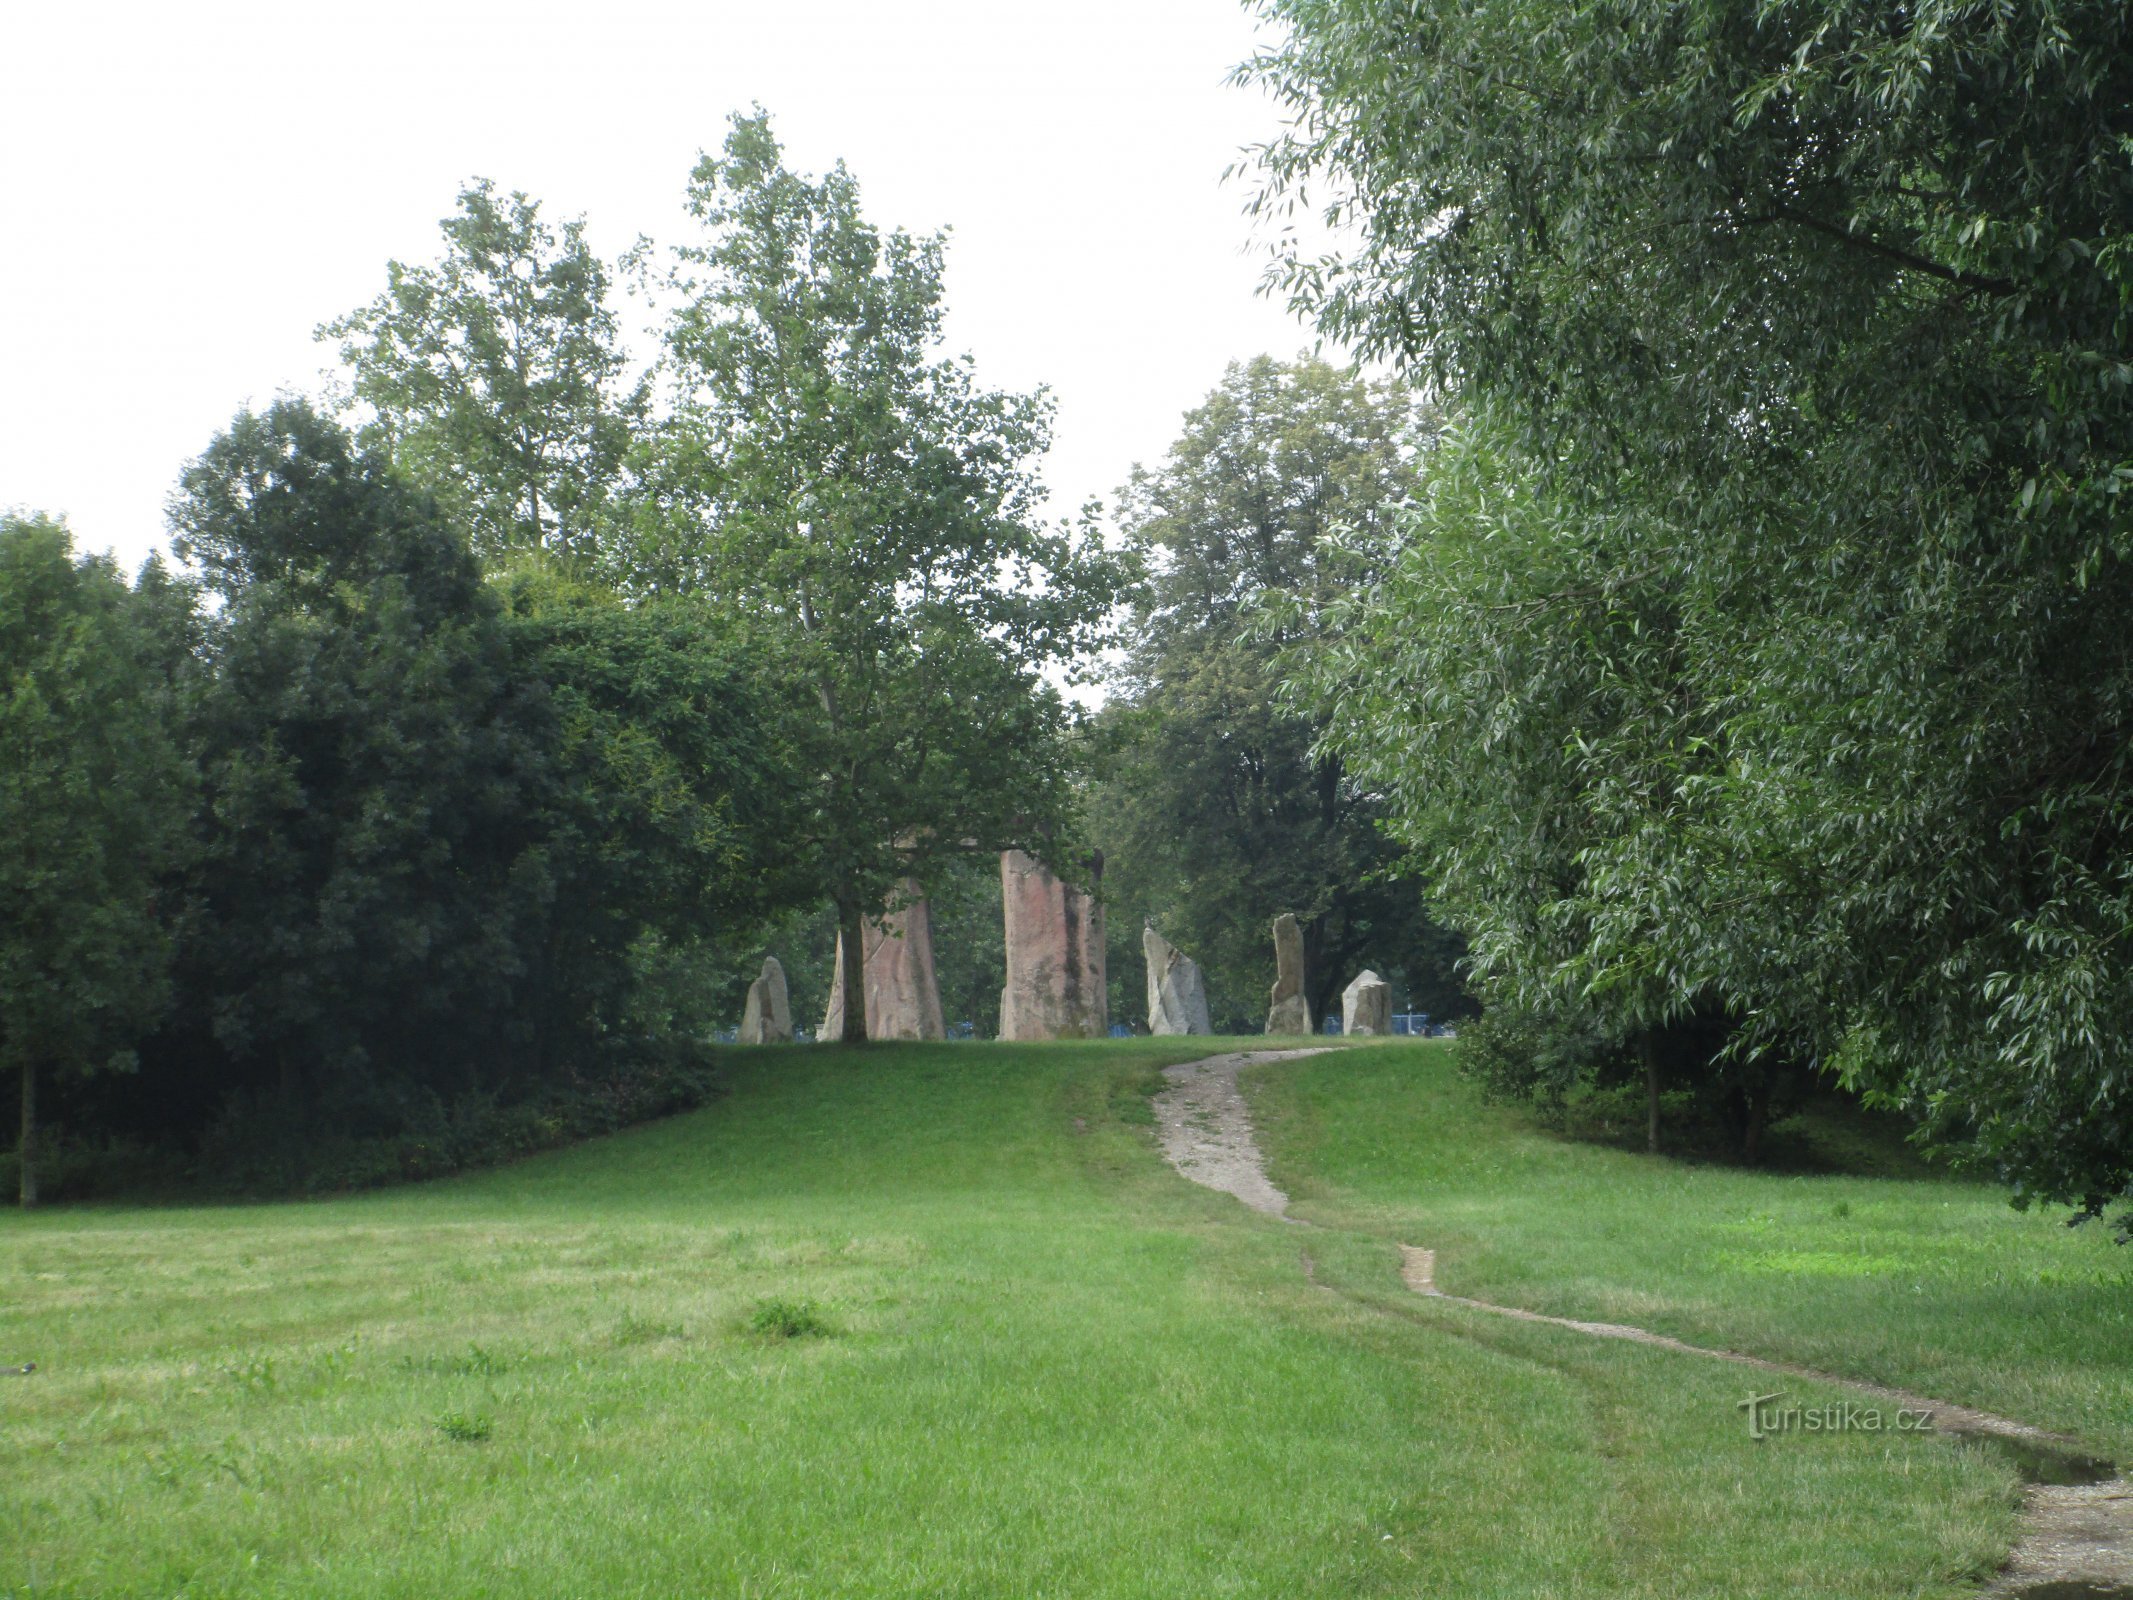 pogled na repliku Stonehengea iz parka šume Soutok